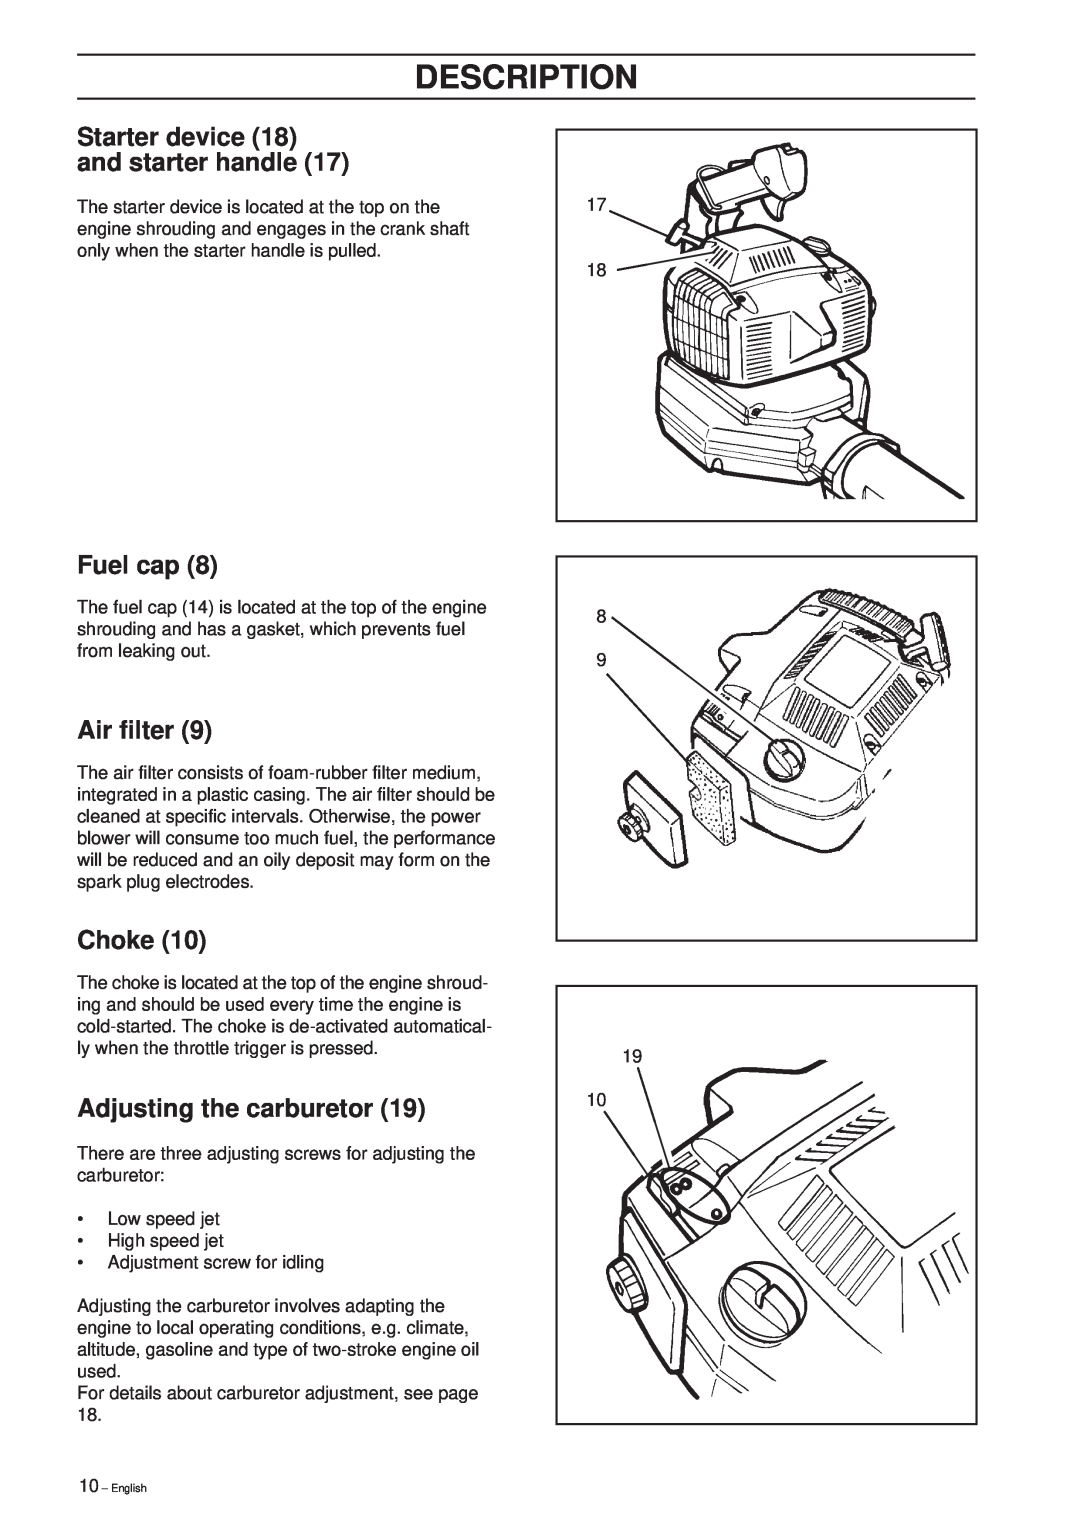 Husqvarna 225 HBV manual Fuel cap, Air filter, Choke, Adjusting the carburetor, Description 